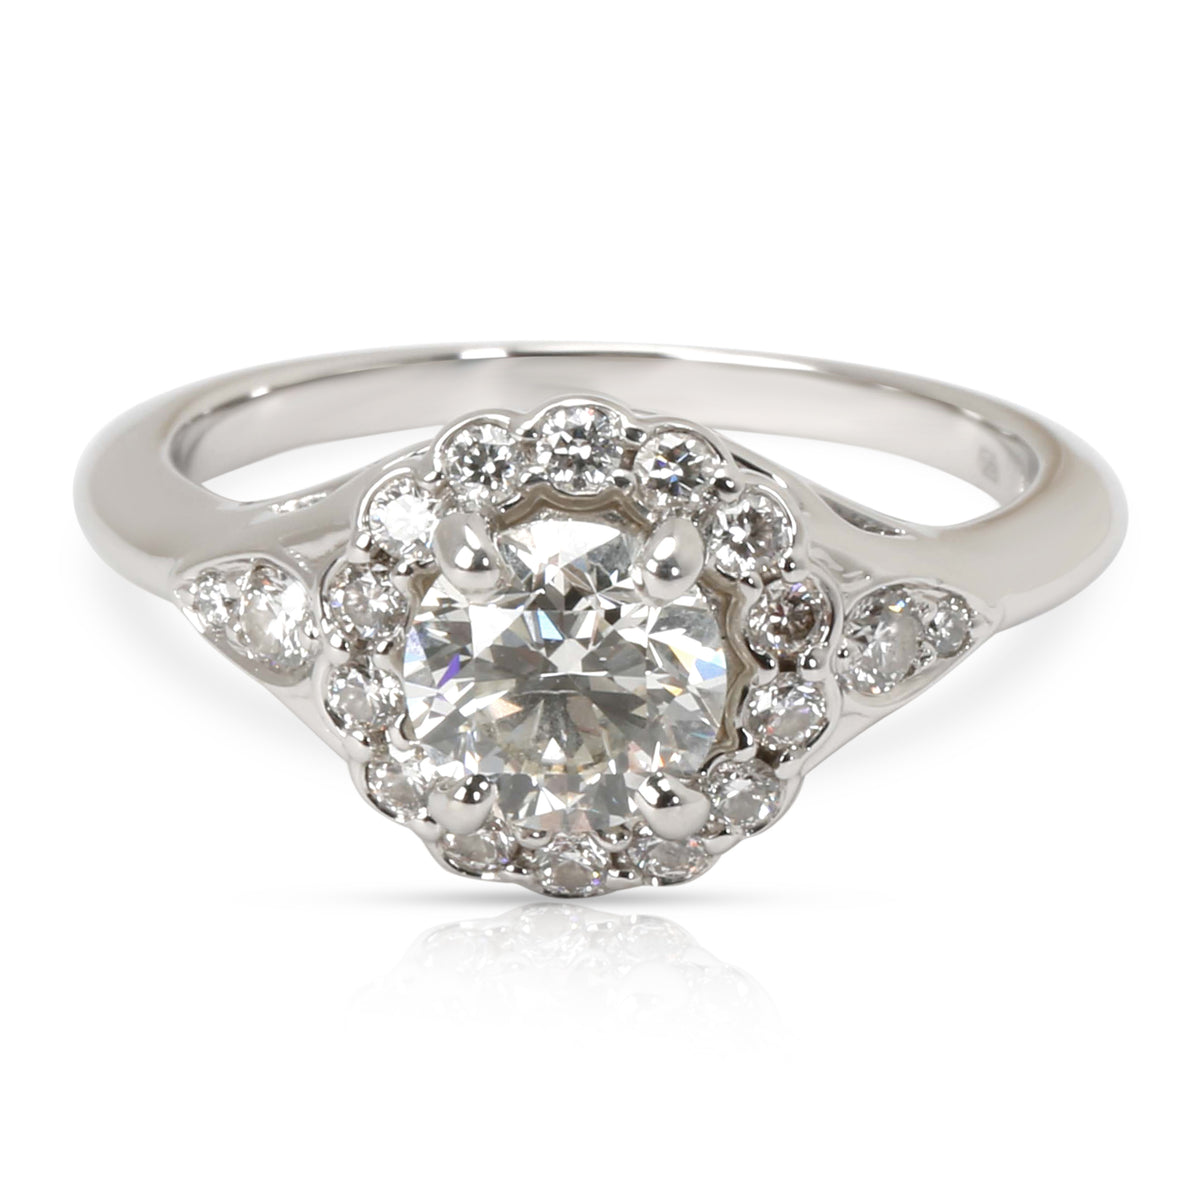 James Allen Diamond Engagement Ring in Platinum (1.22 CTW)